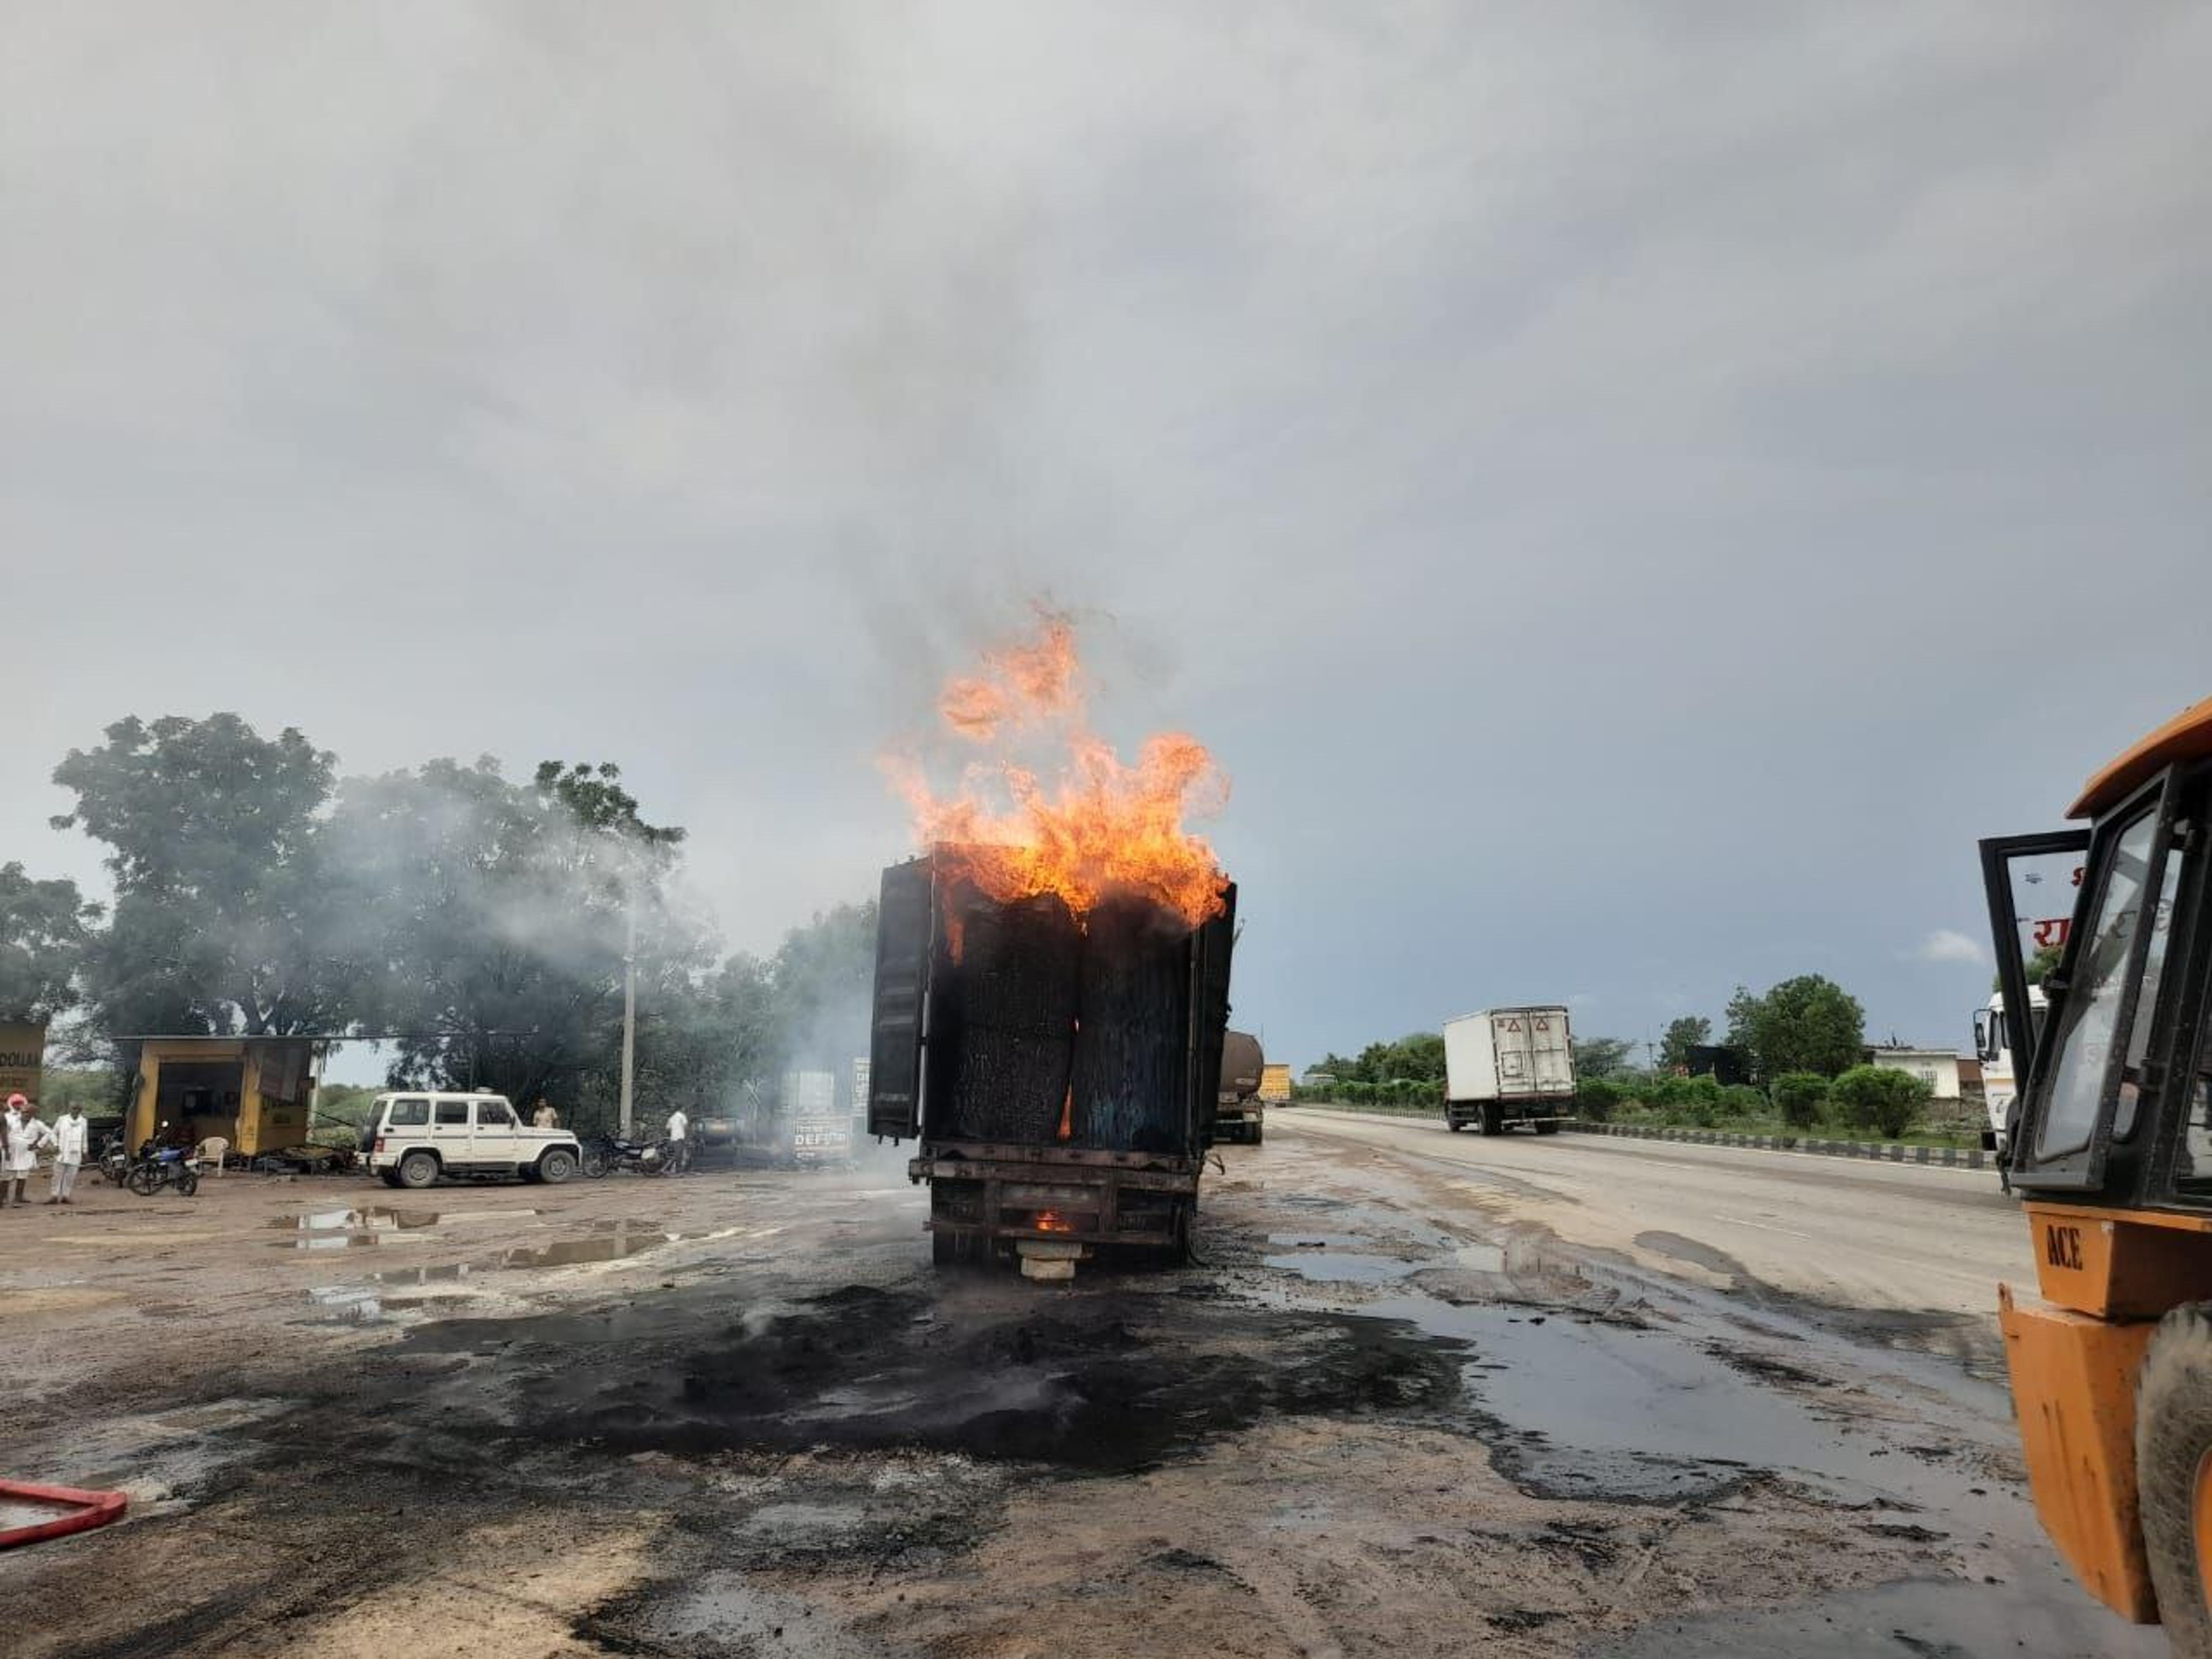 Accident in rajasthan : जयपुर-अजमेर हाईवे पर  तीन ट्रक ​भिड़े, जिंदा जल गई पांच जिंदगिया